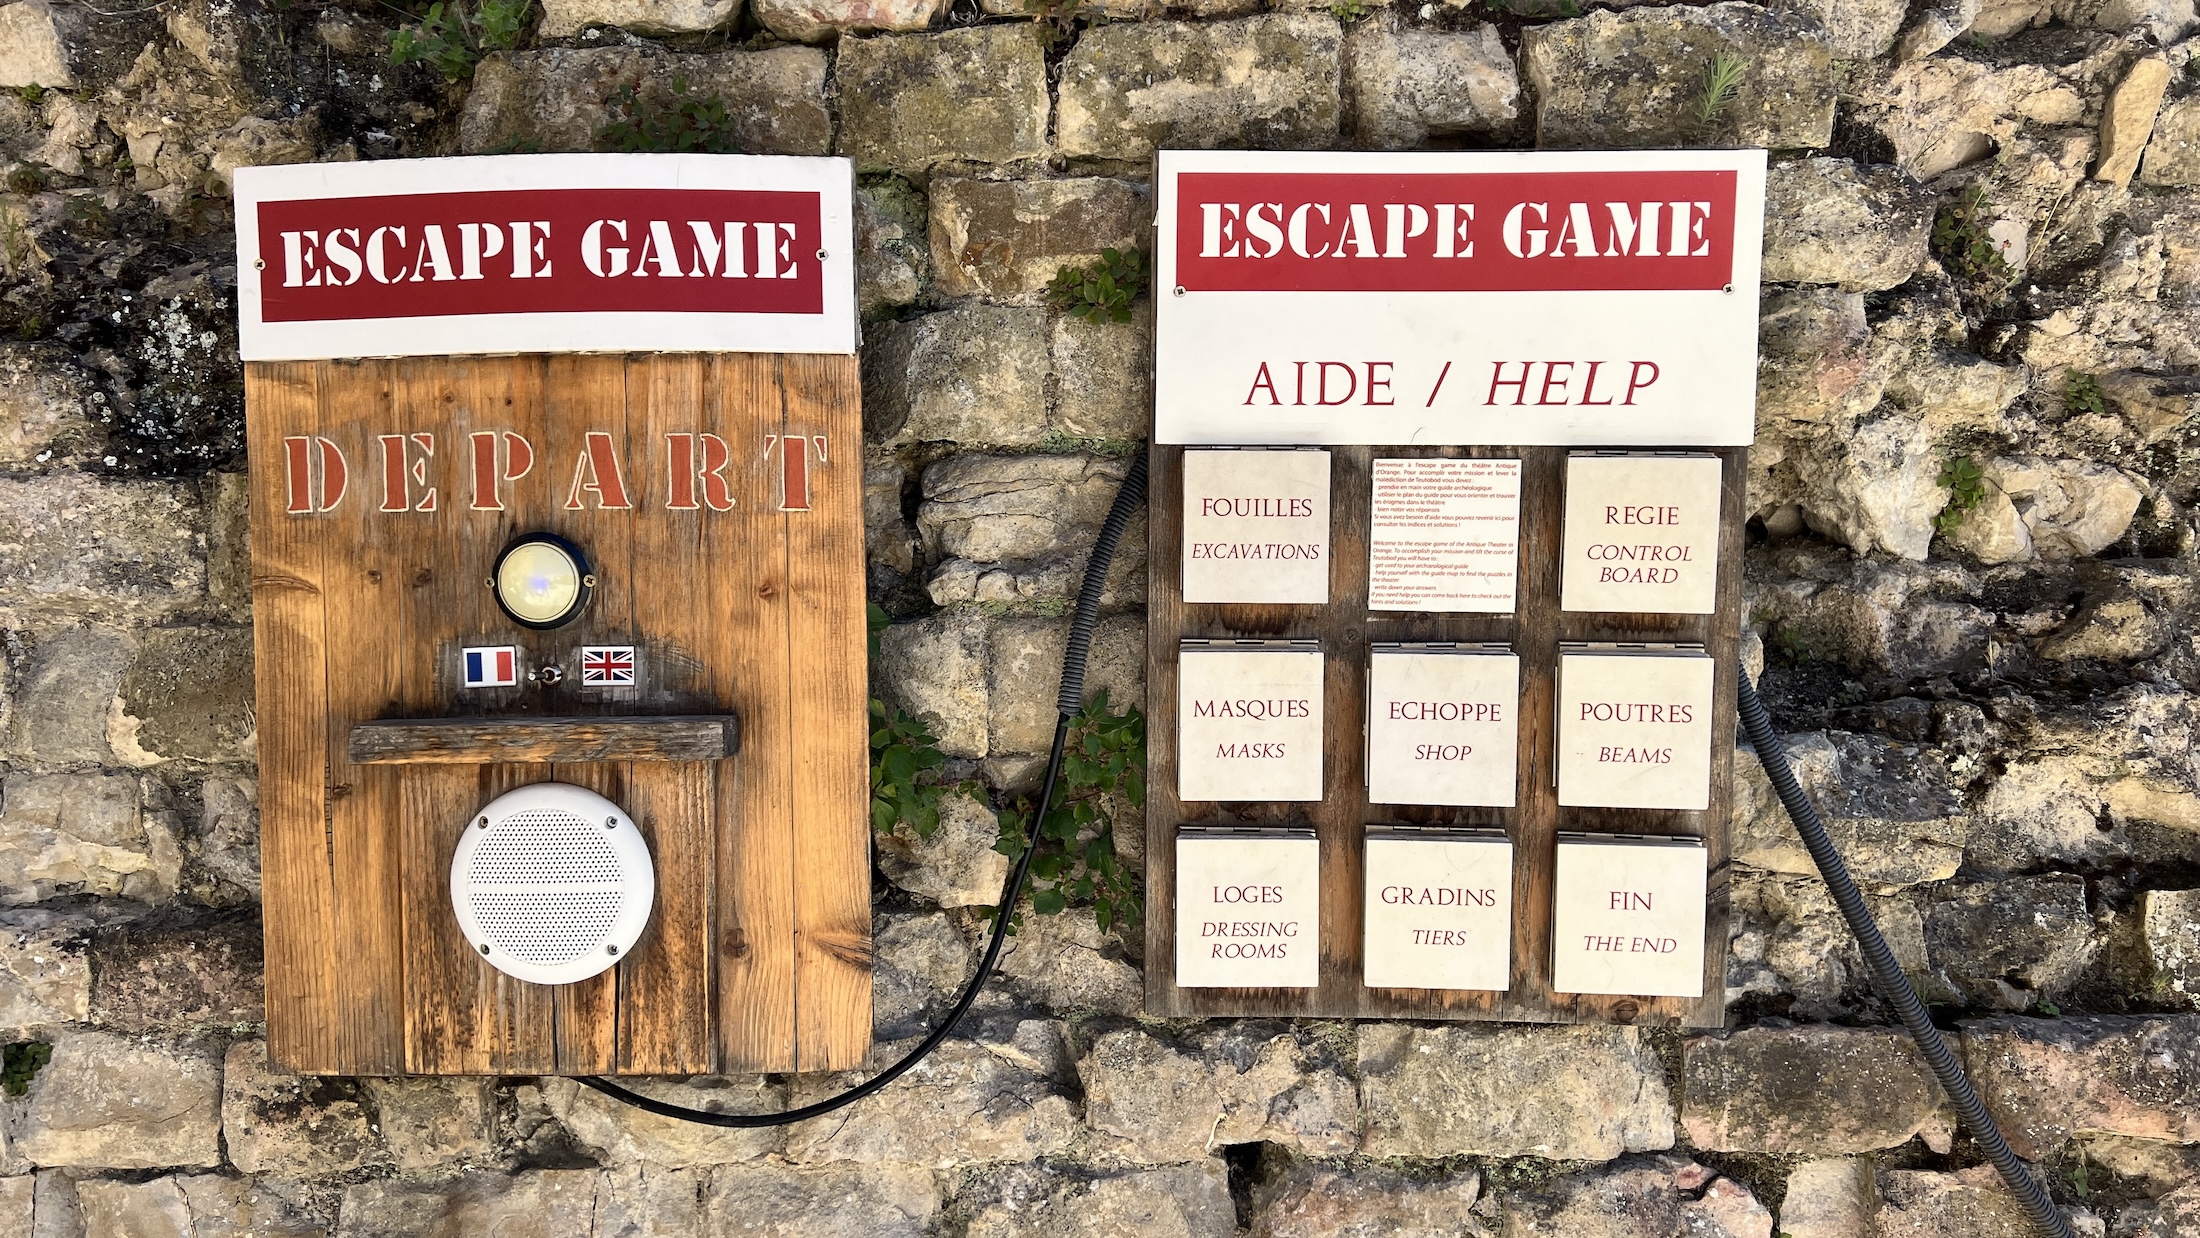 Minstens zo leuk is een Escape game die je met meerdere personen kunt spelen